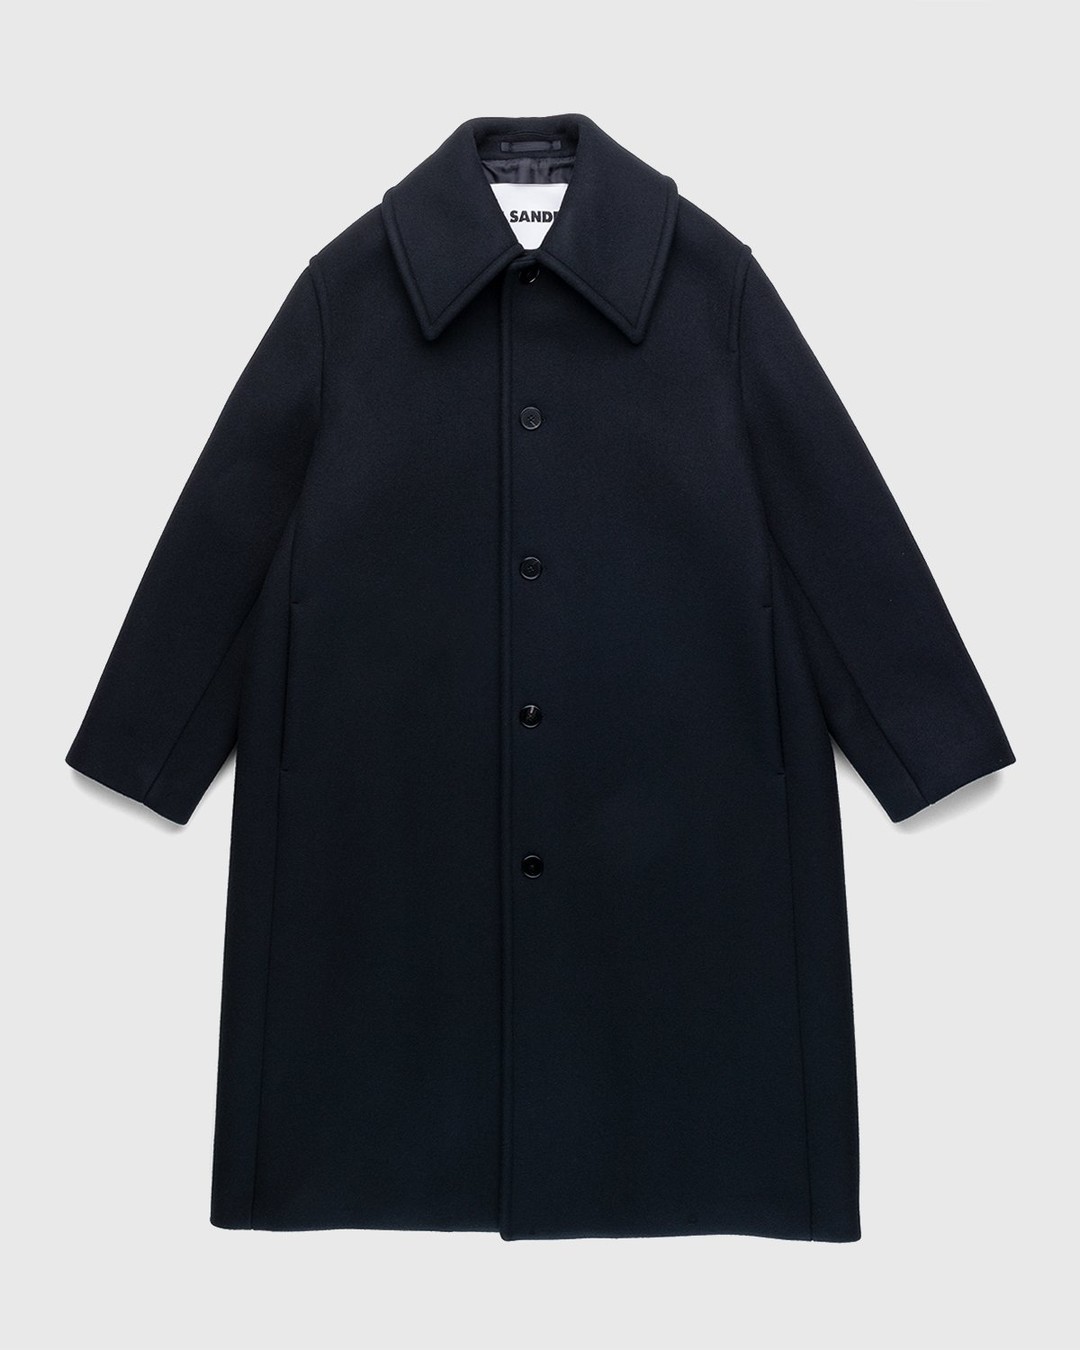 Jil Sander – Coat Black - Outerwear - Black - Image 1